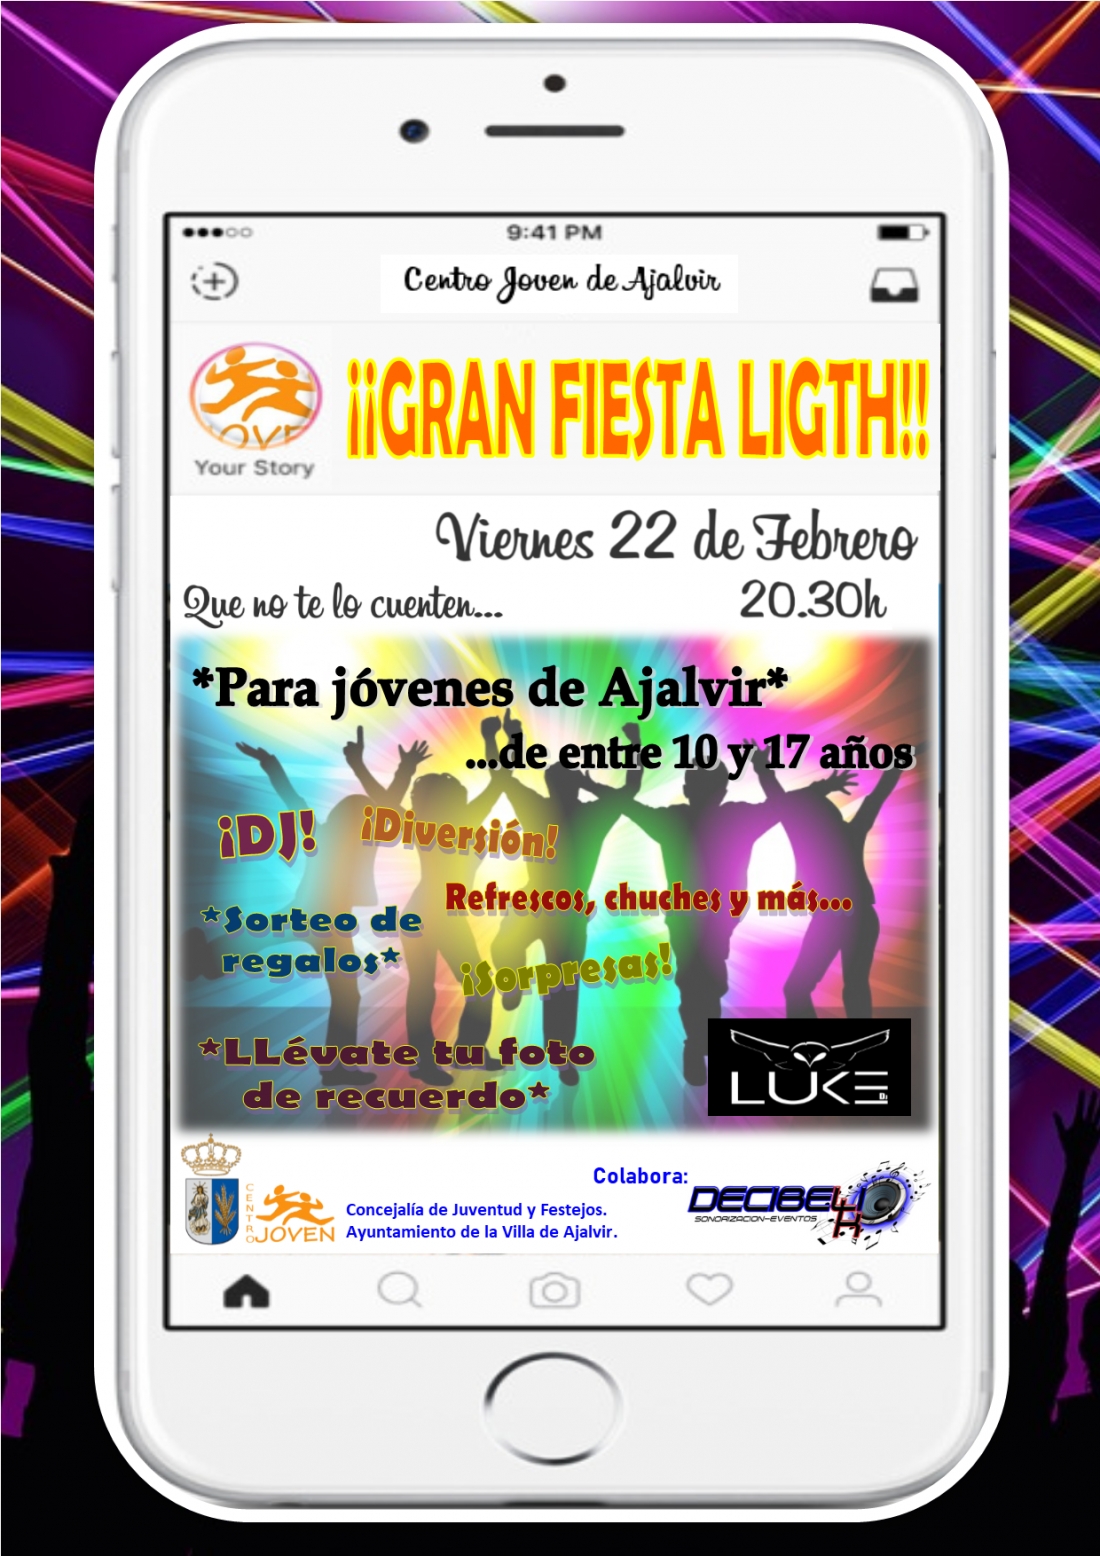 Fiesta light en el Centro Joven. Viernes 22 de Febrero